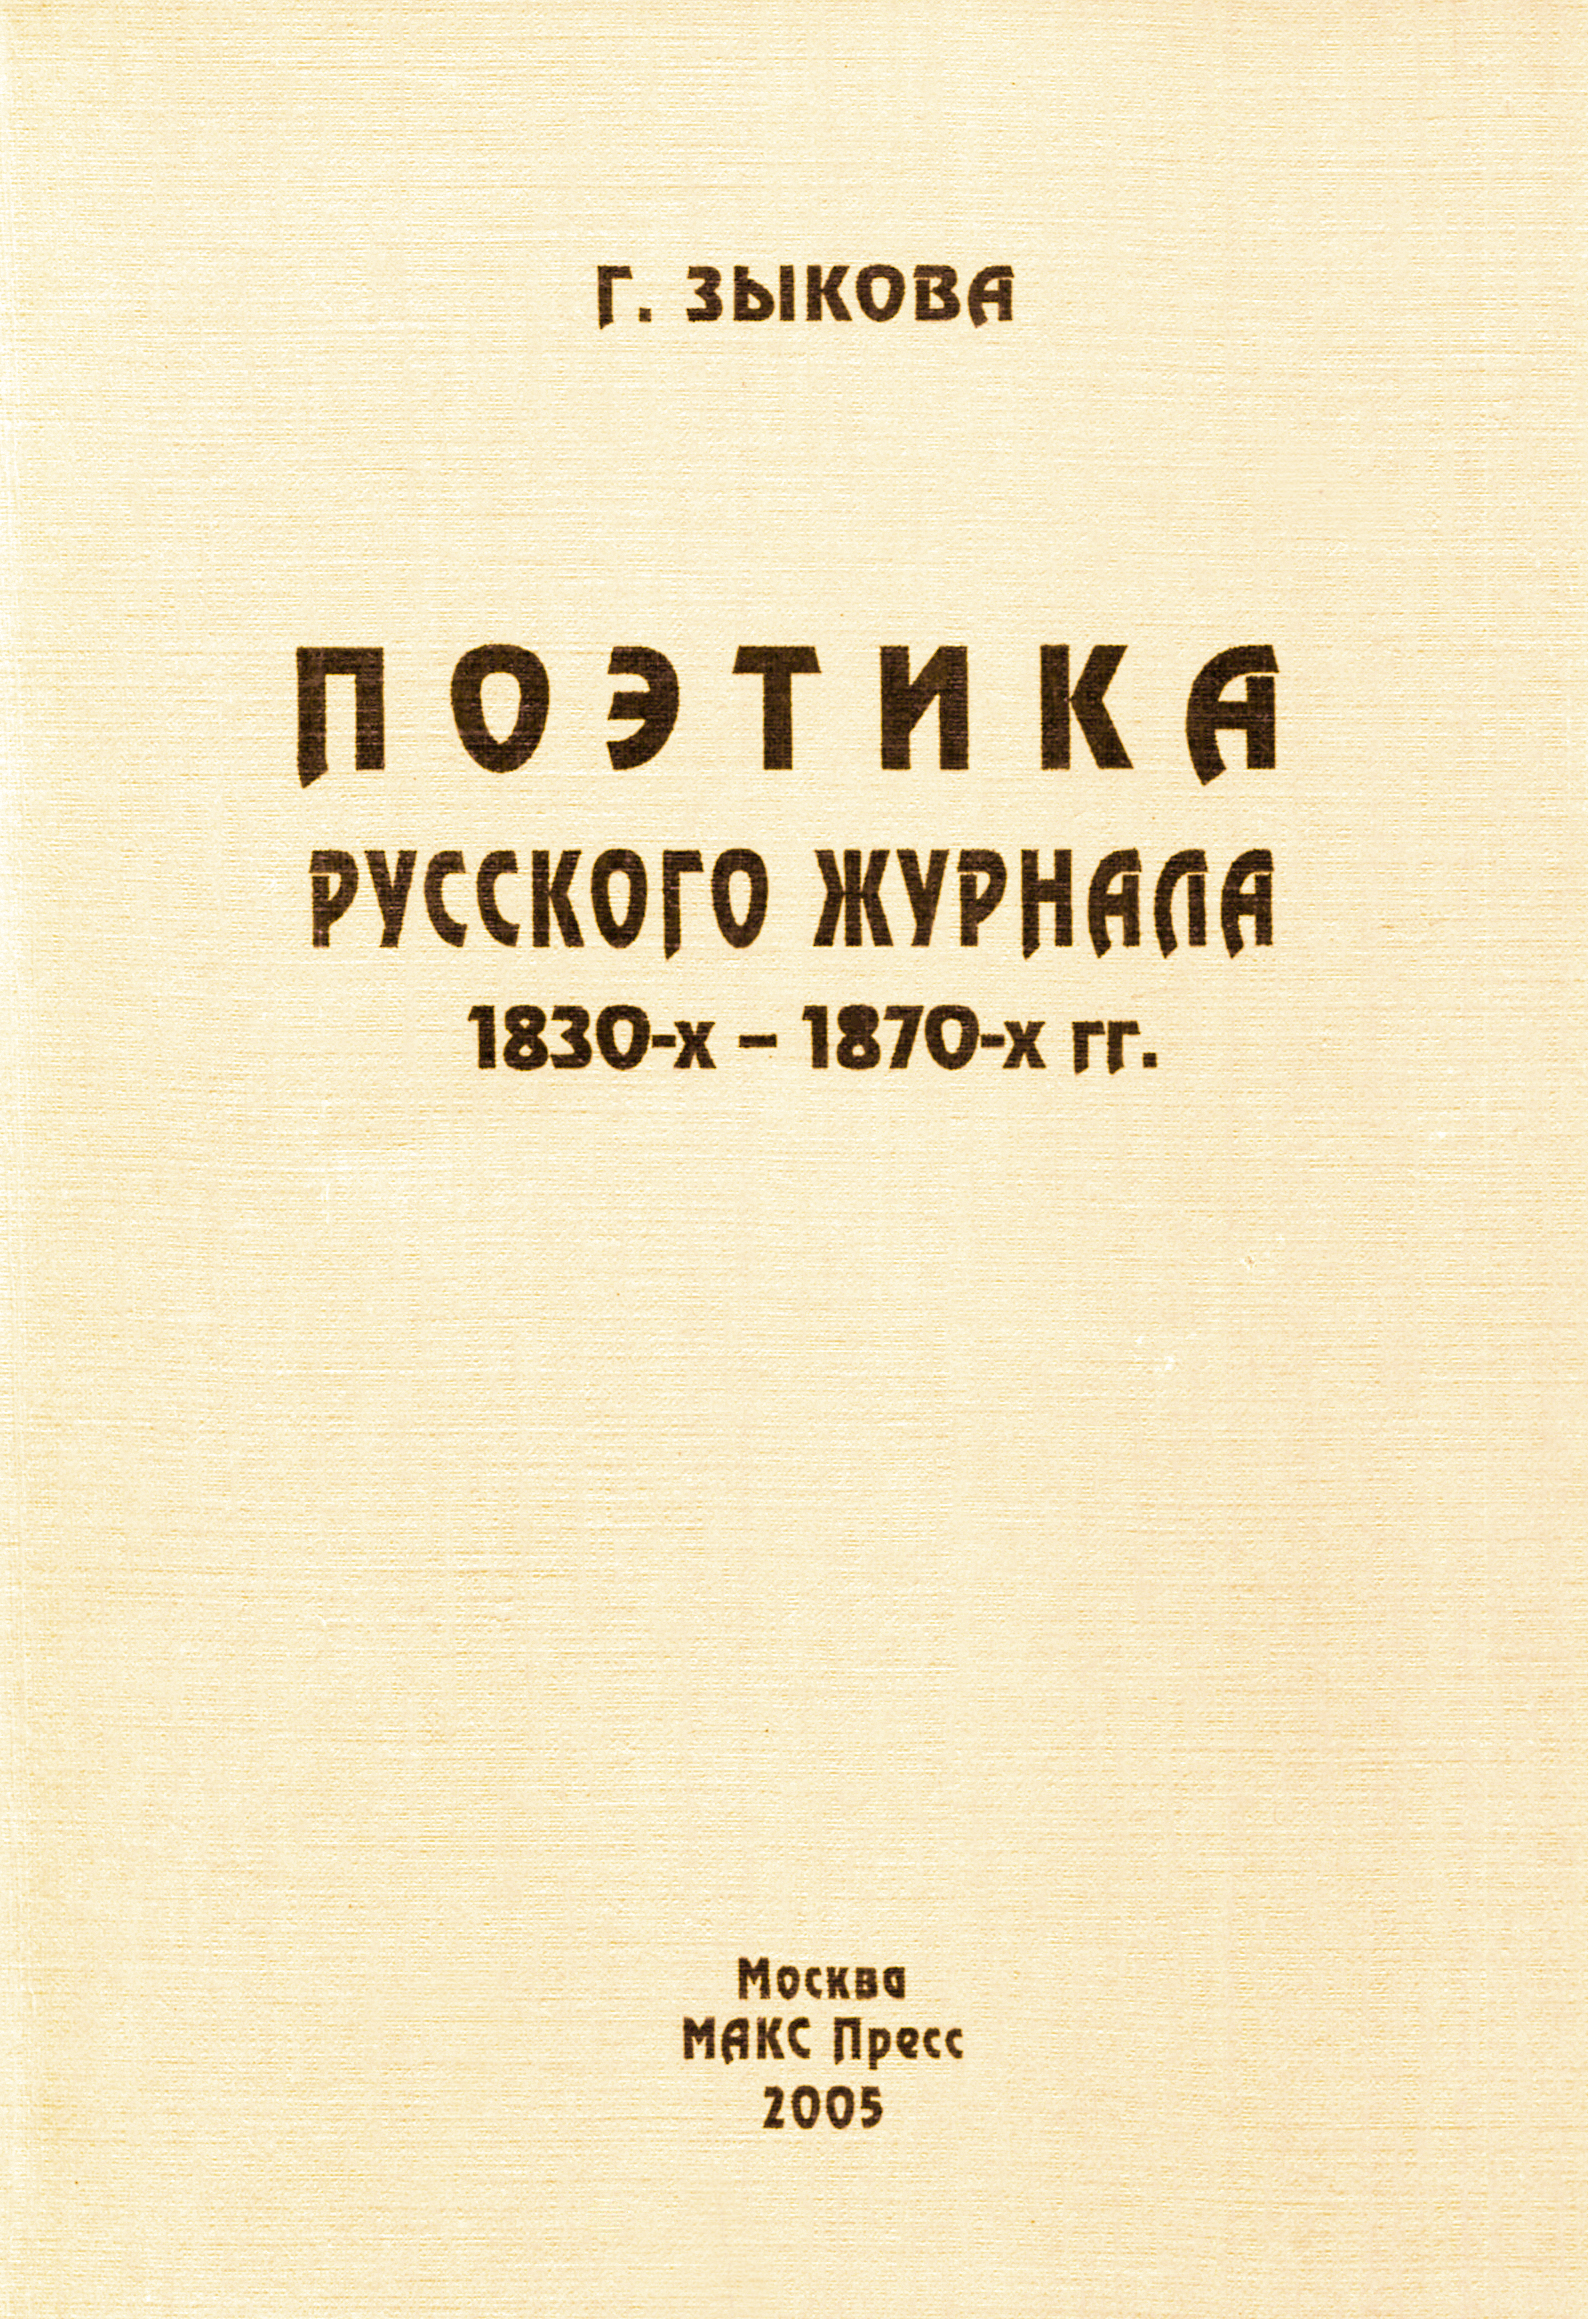 Поэтика русского журнала 1830-1870 гг.